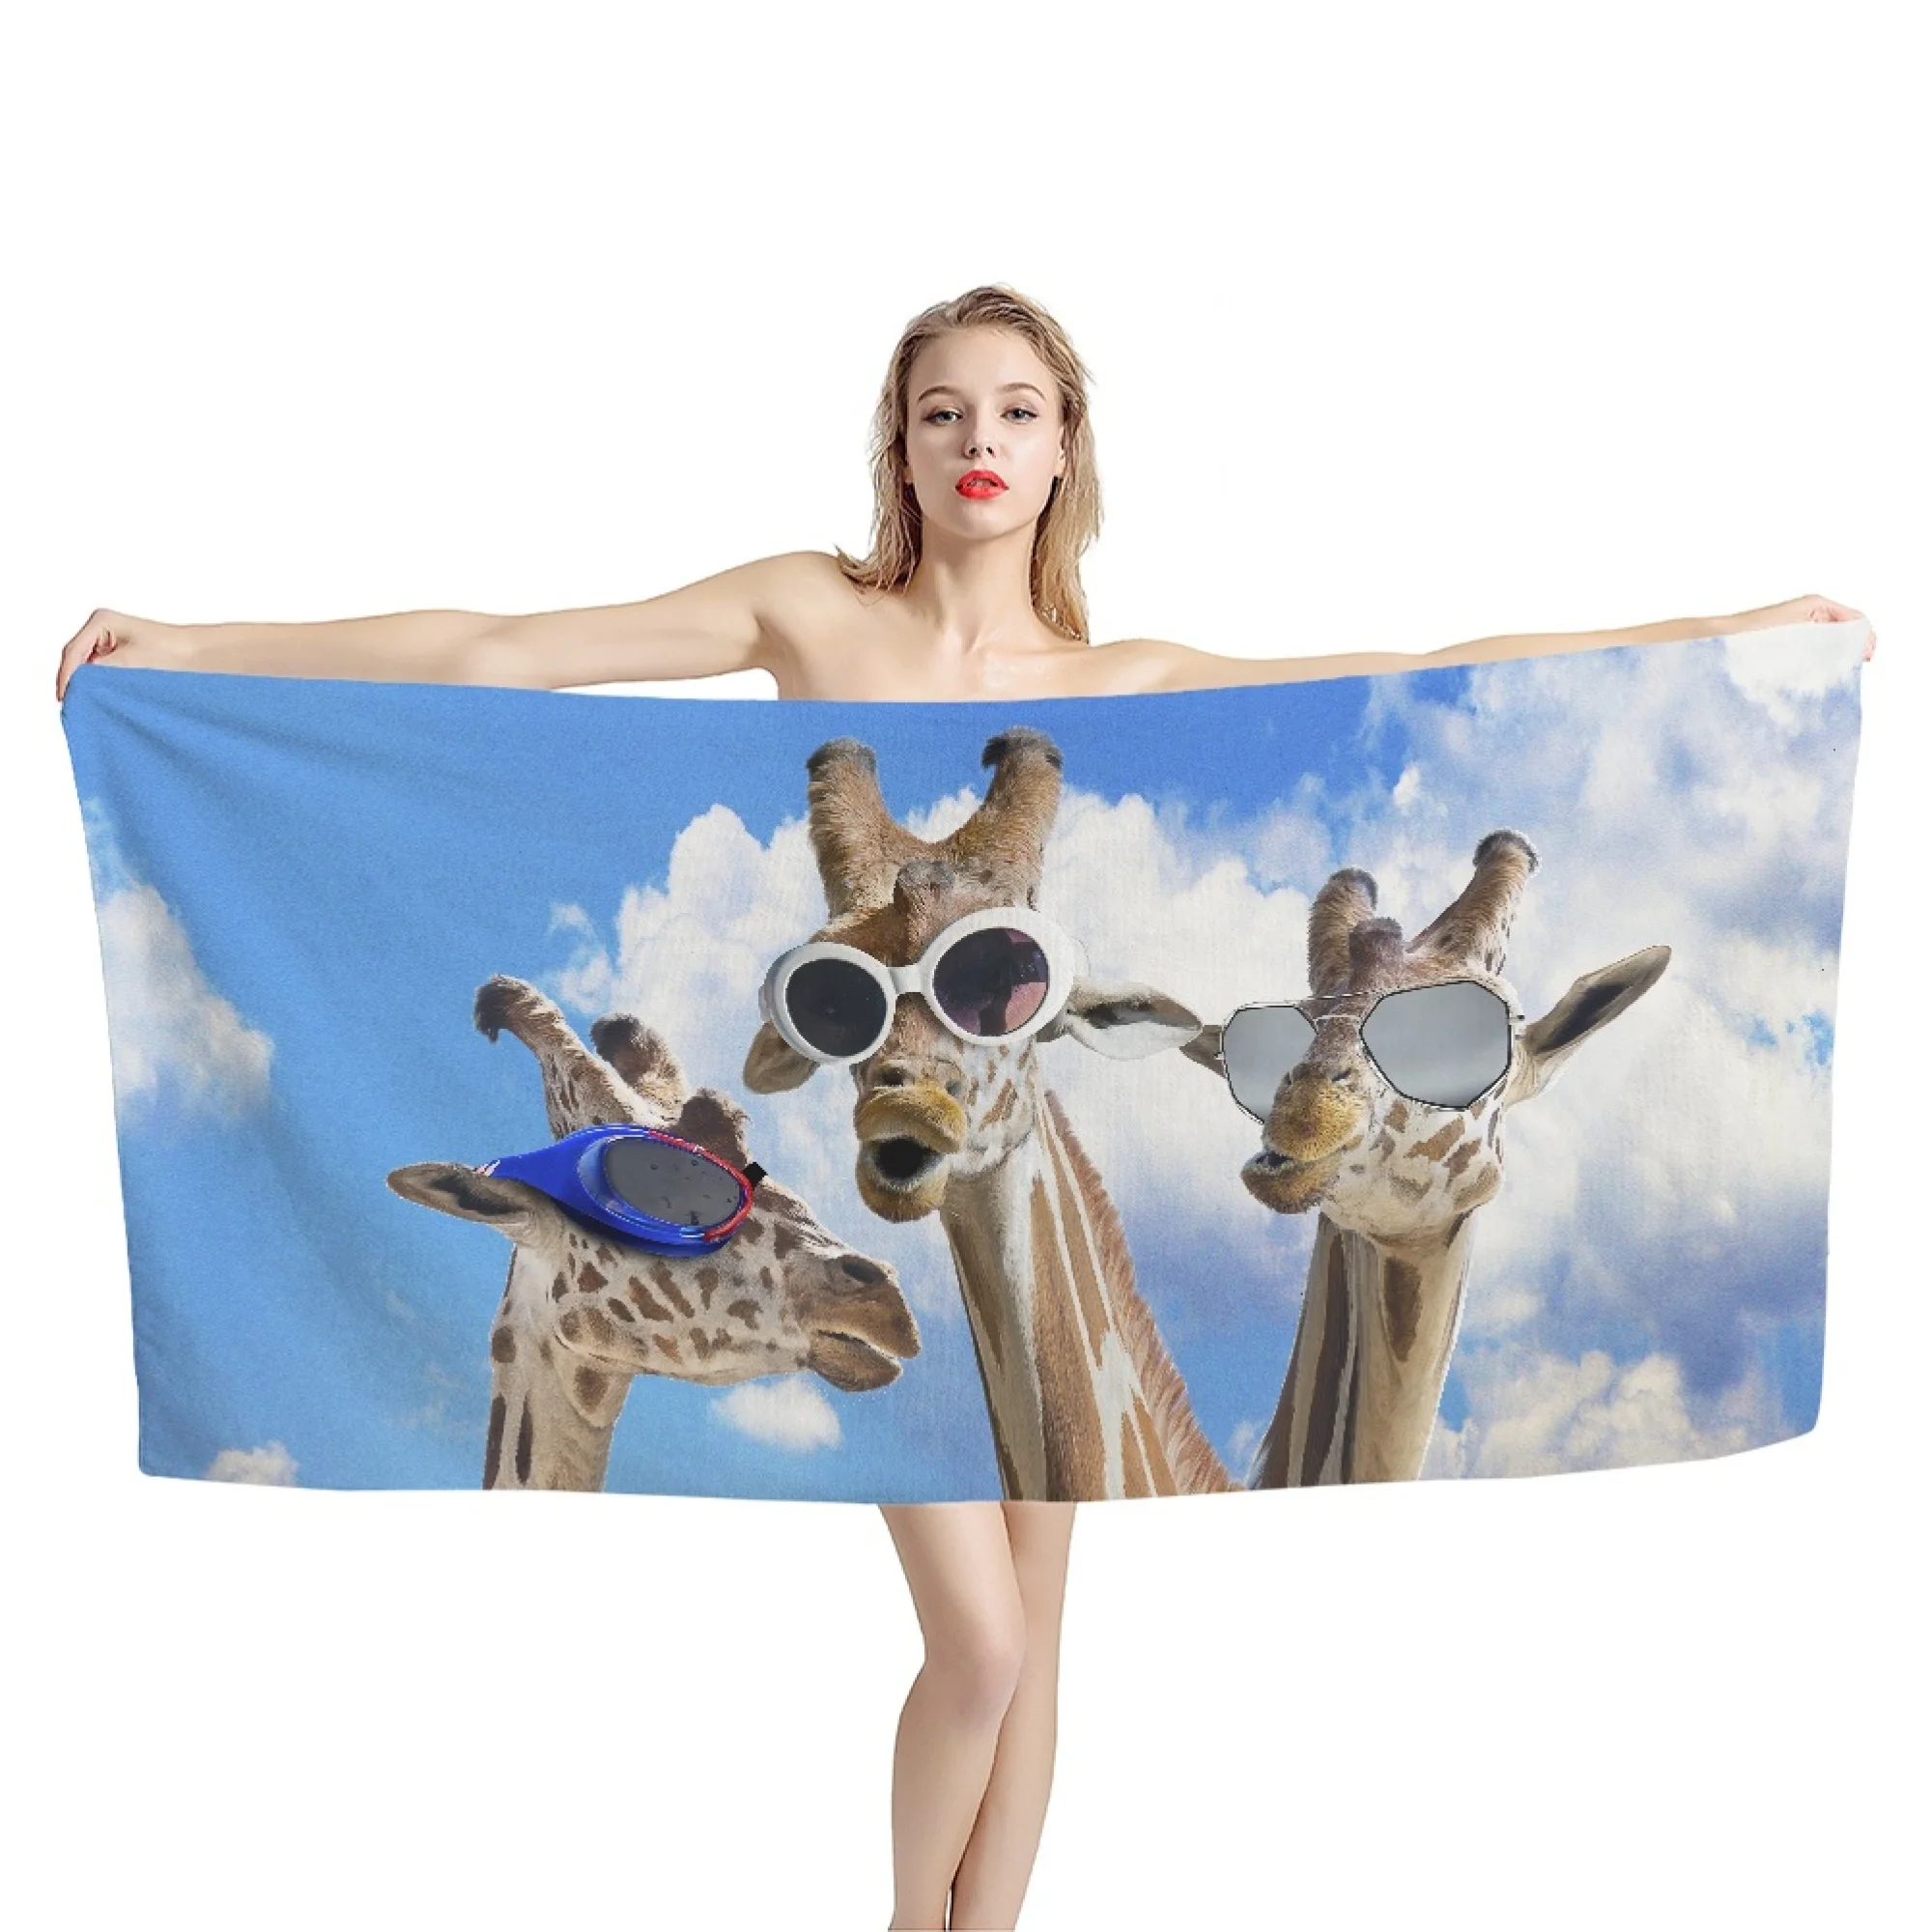 

Пляжные полотенца Giraffes, удобные мягкие абсорбирующие Банные полотенца с милыми мультяшными животными для ванной комнаты, тренажерного зала, йоги, путешествий, искусственное полотенце